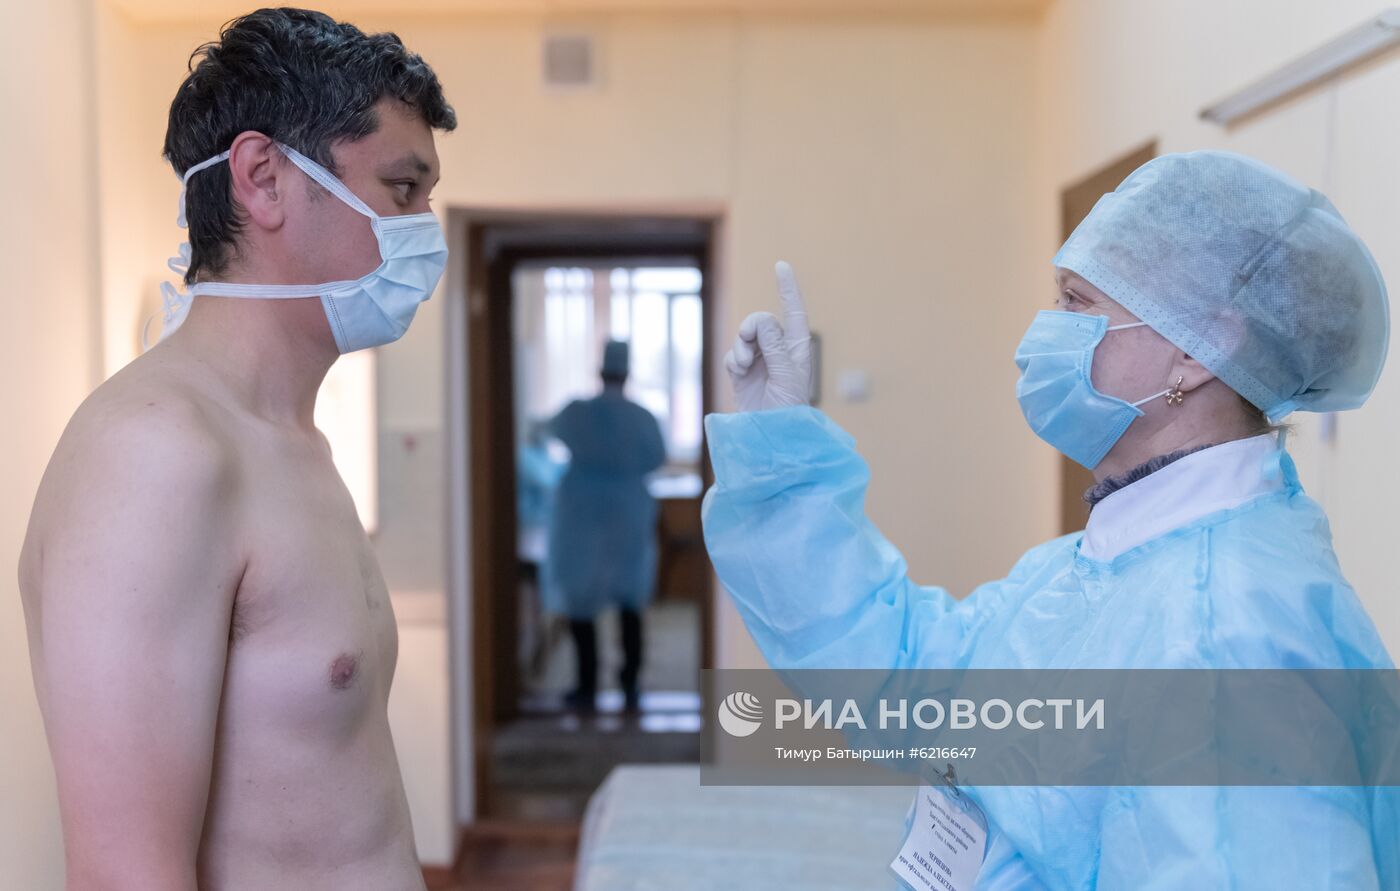 Спецсборы военнообязанных для борьбы с коронавирусом в Казахстане